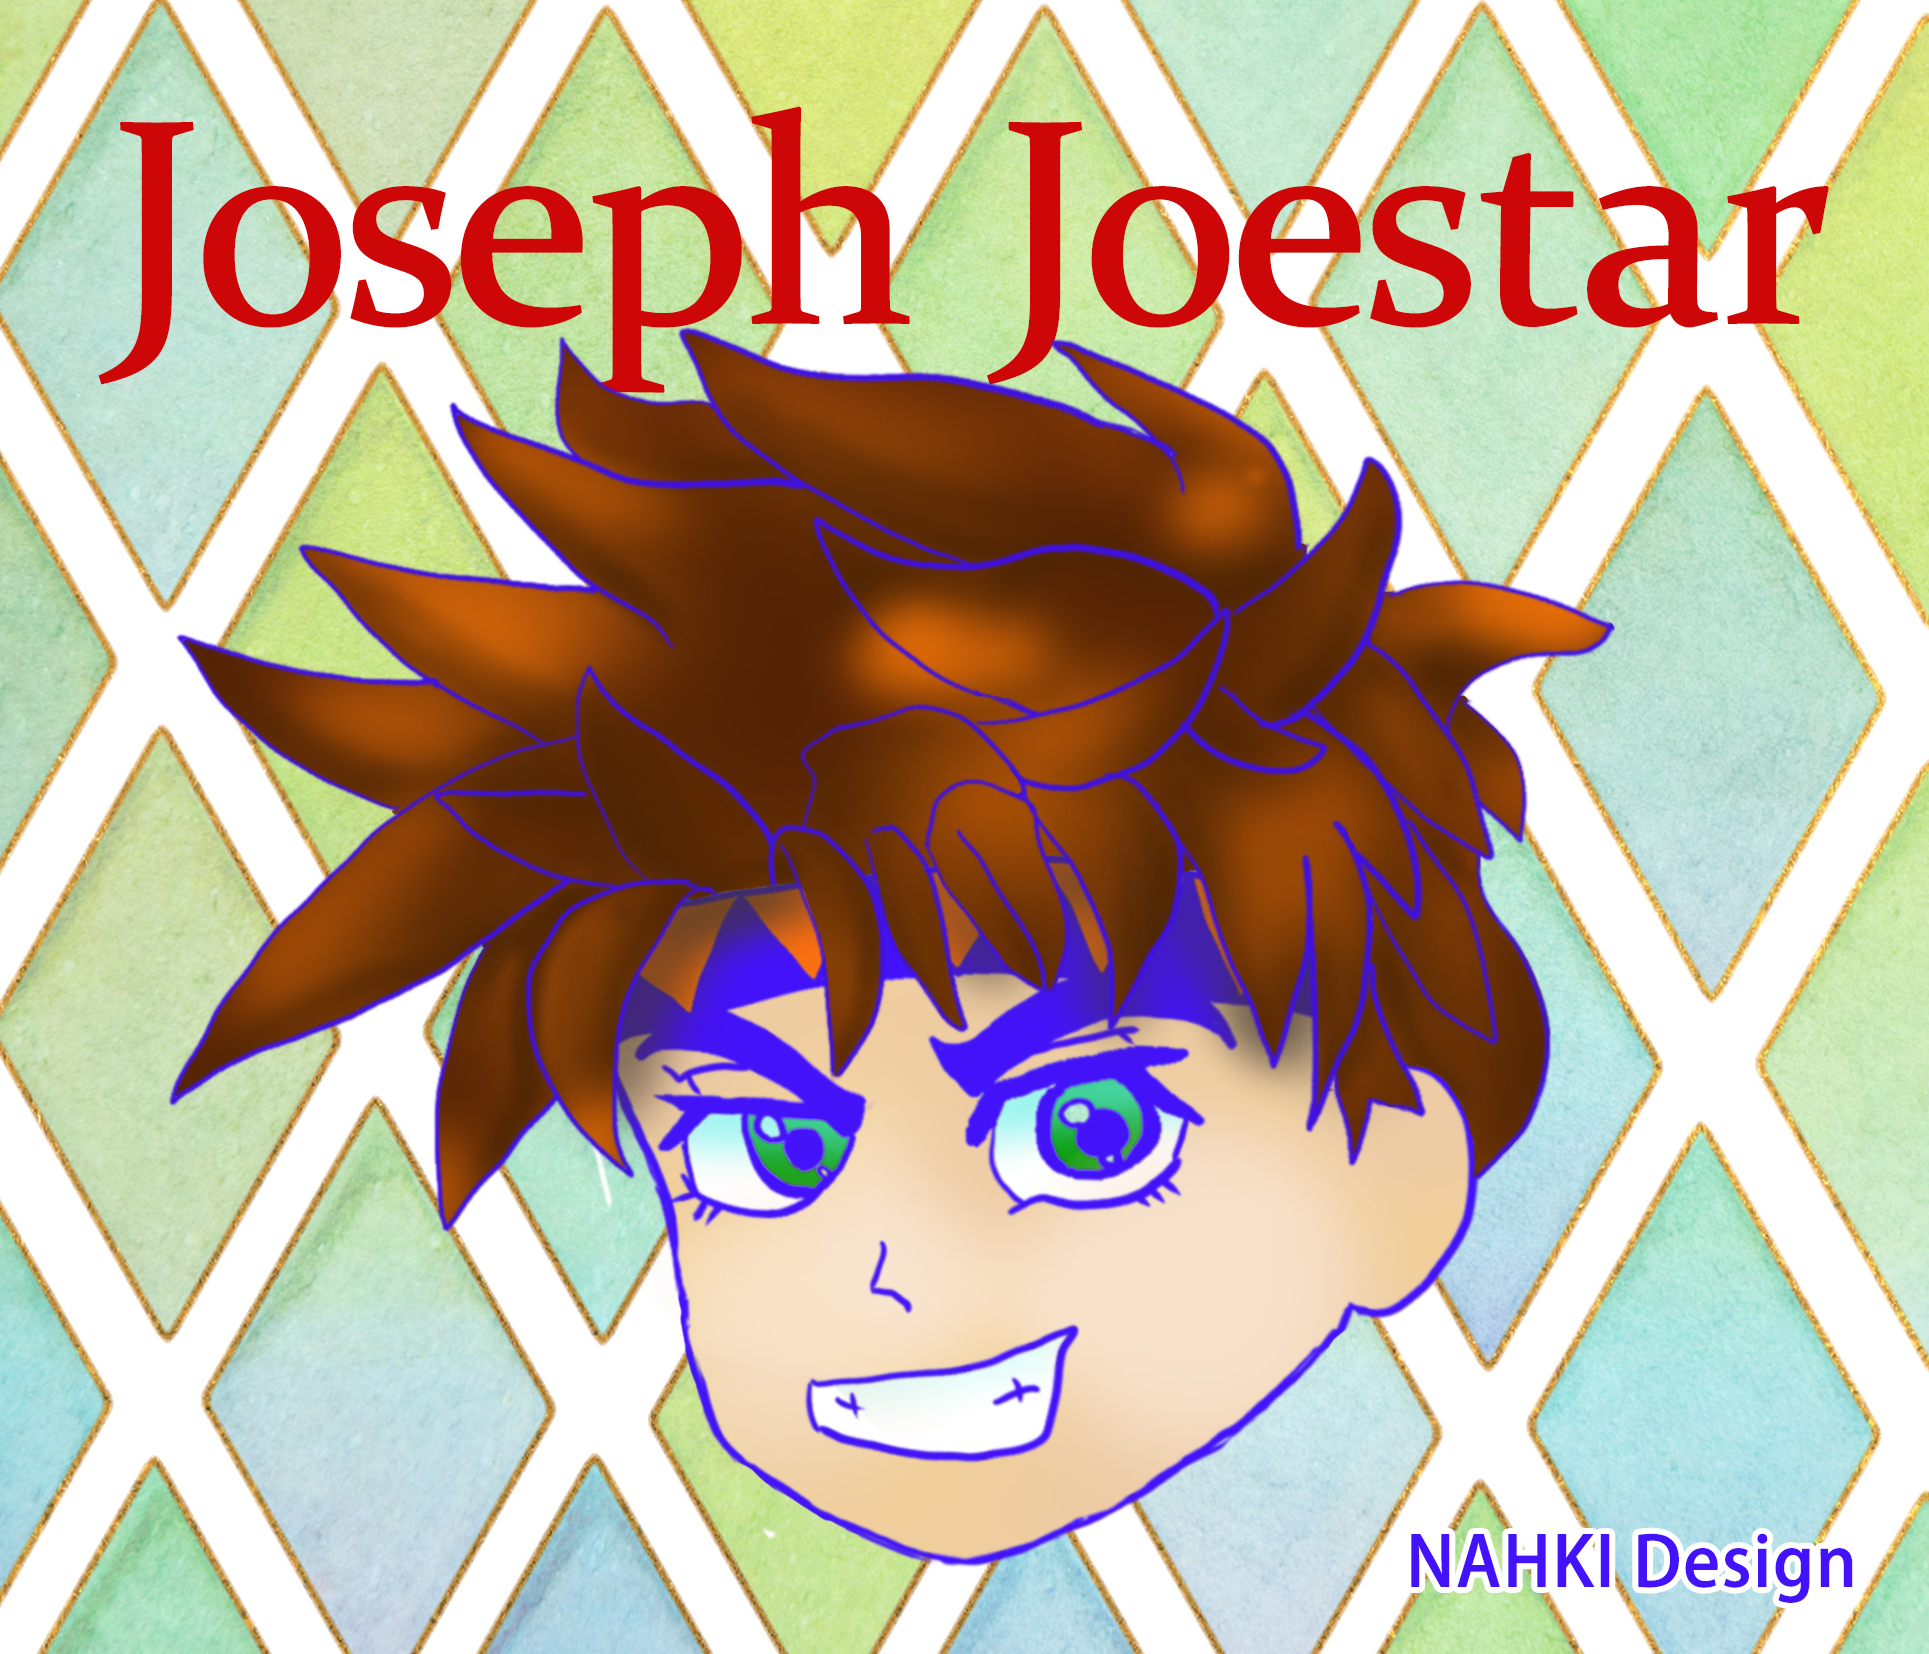 Joseph Joestar